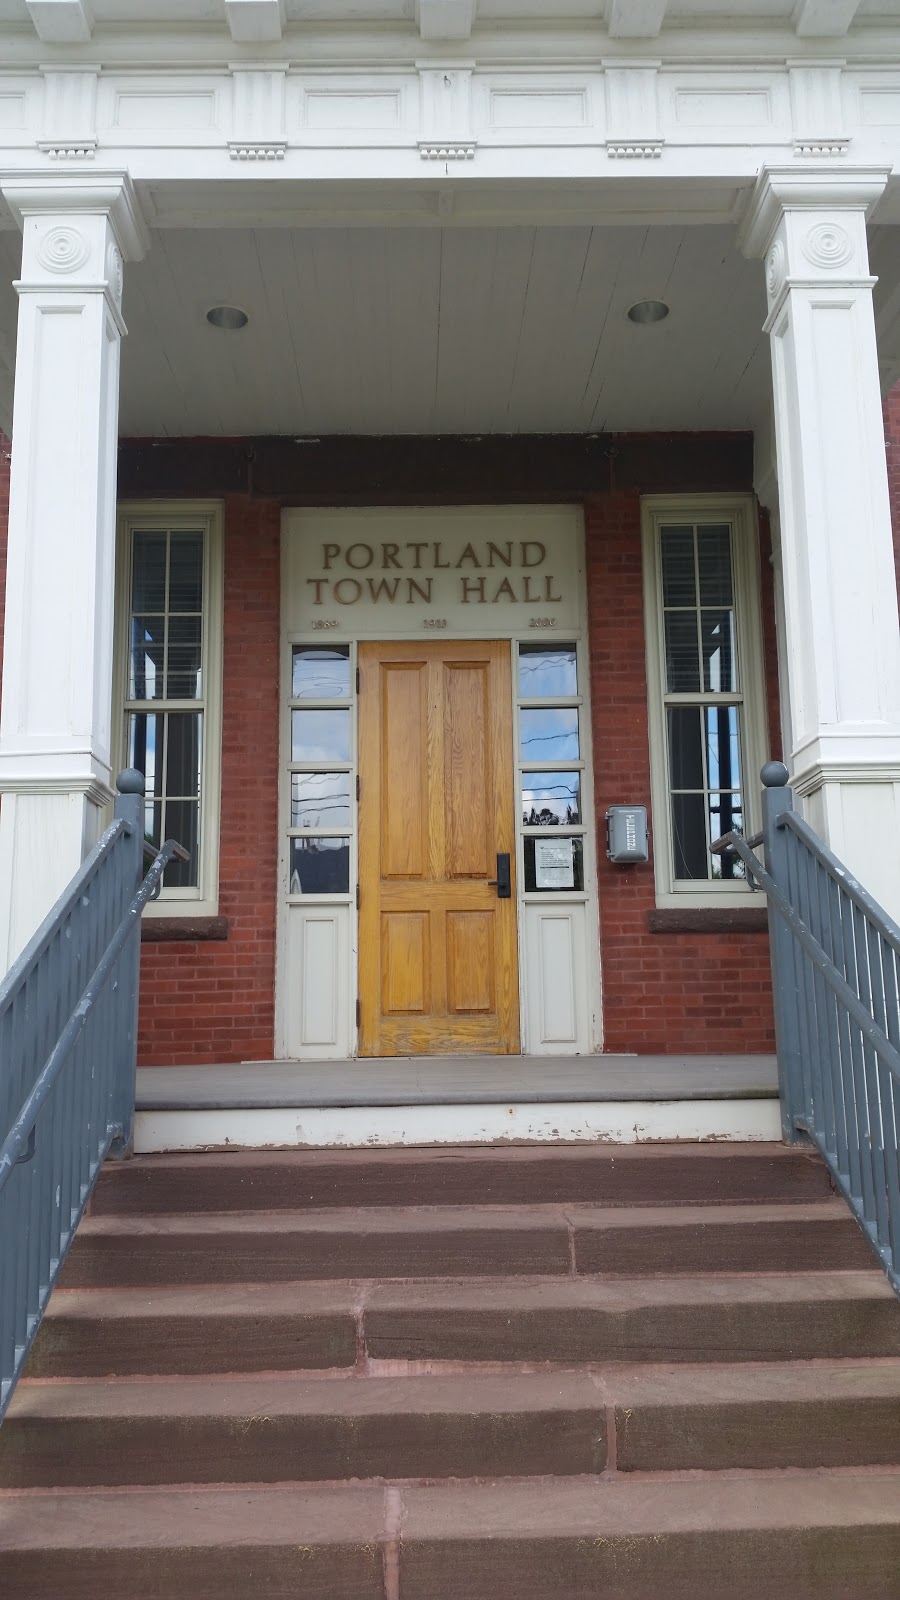 Portland Town Hall | 33 E Main St, Portland, CT 06480 | Phone: (860) 342-6743